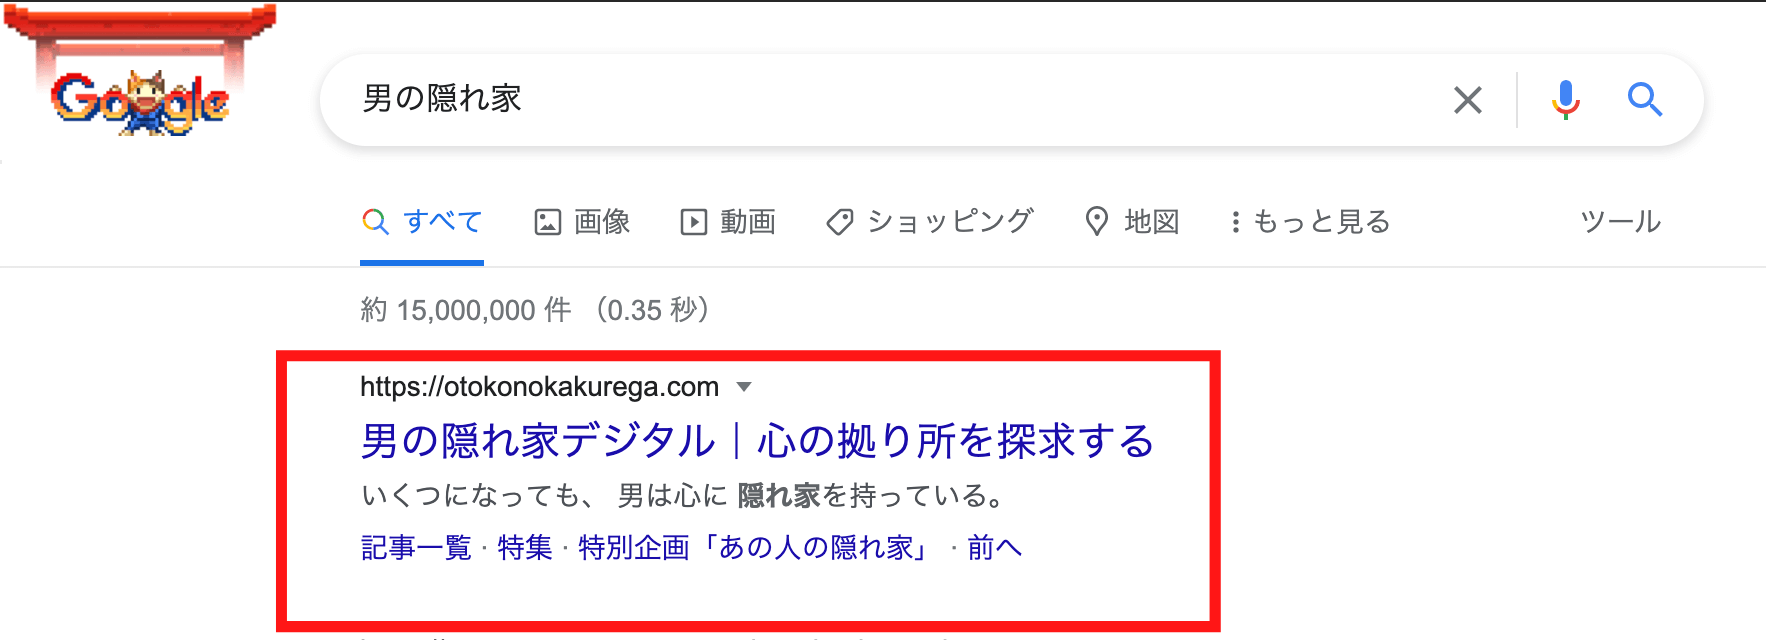 google-otokonokakurega-top display